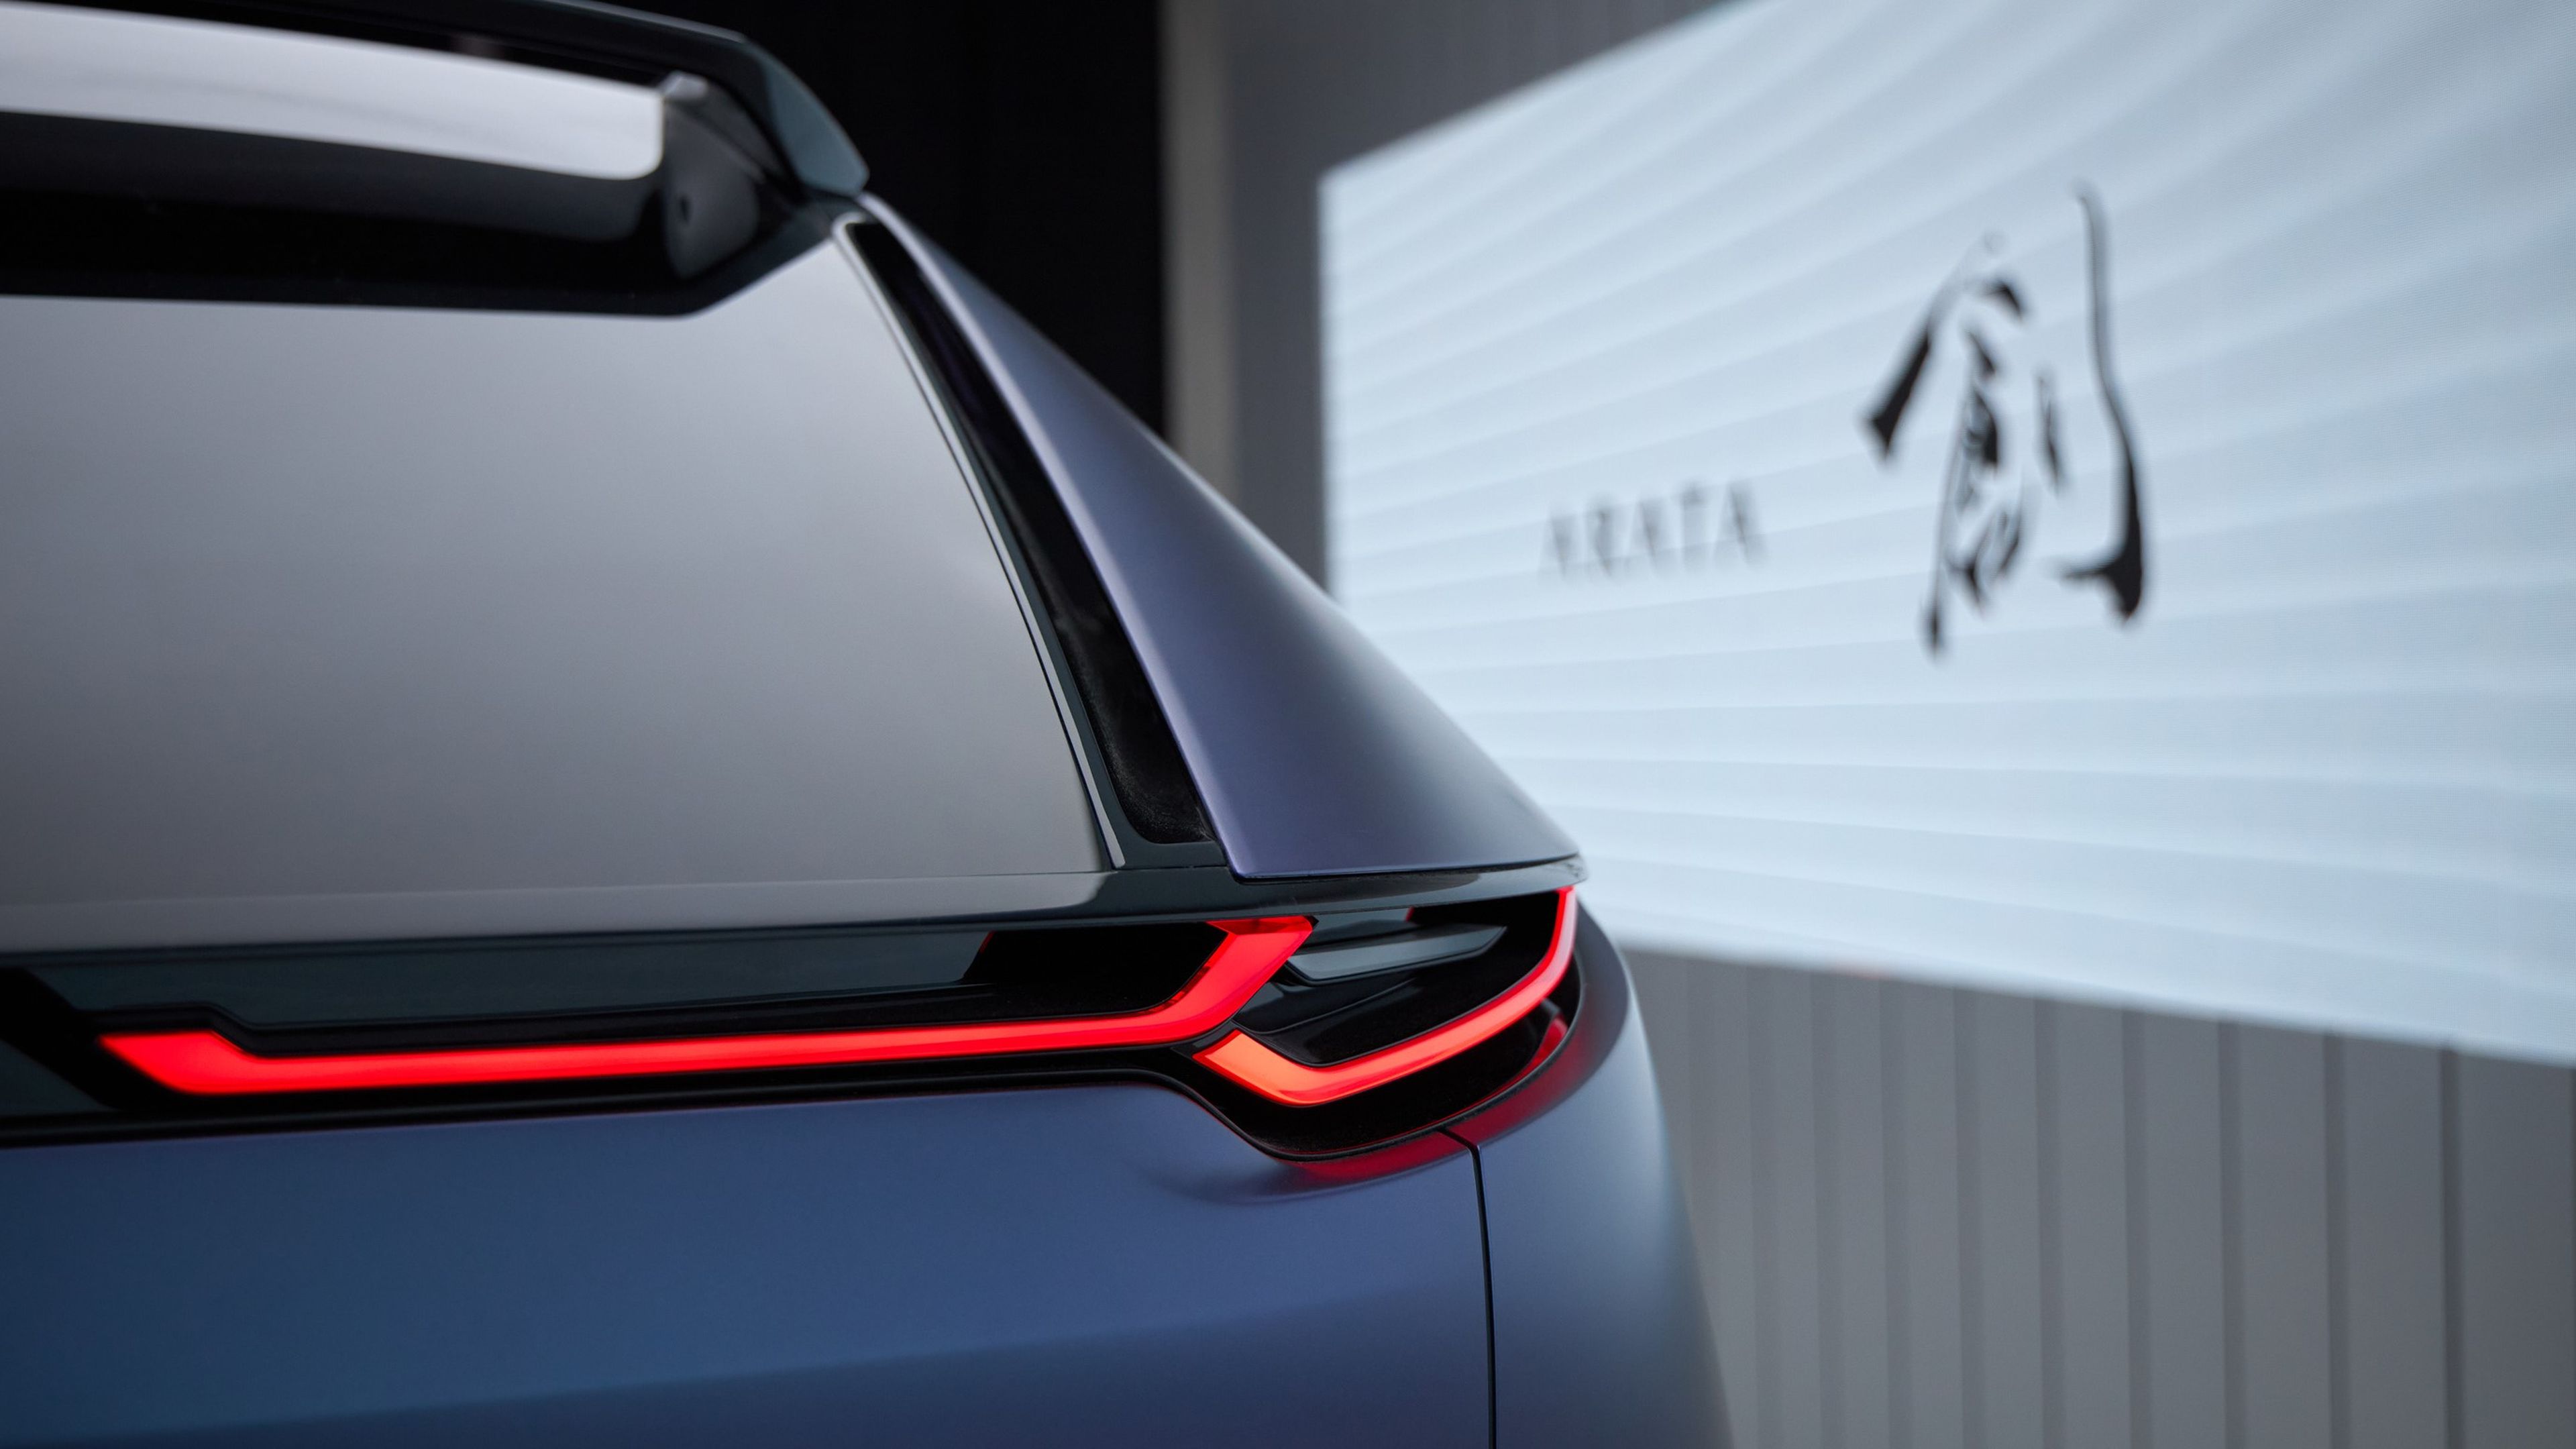 Mazda Arata concept